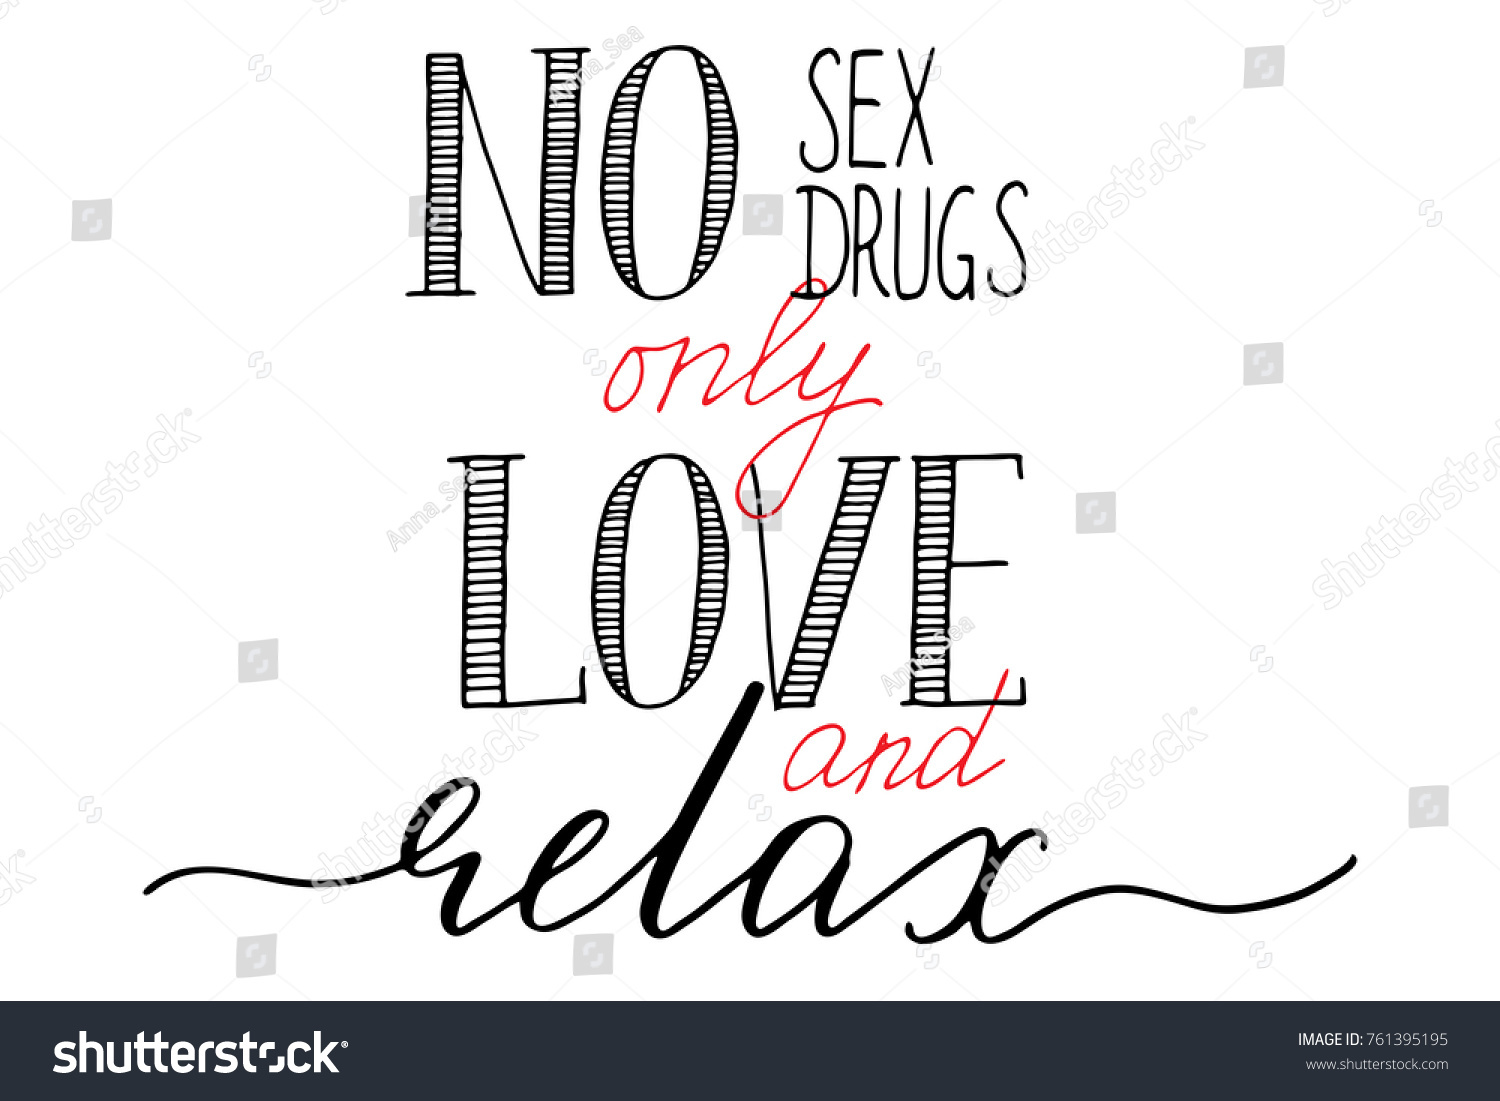 No sex no drugs in San Jose